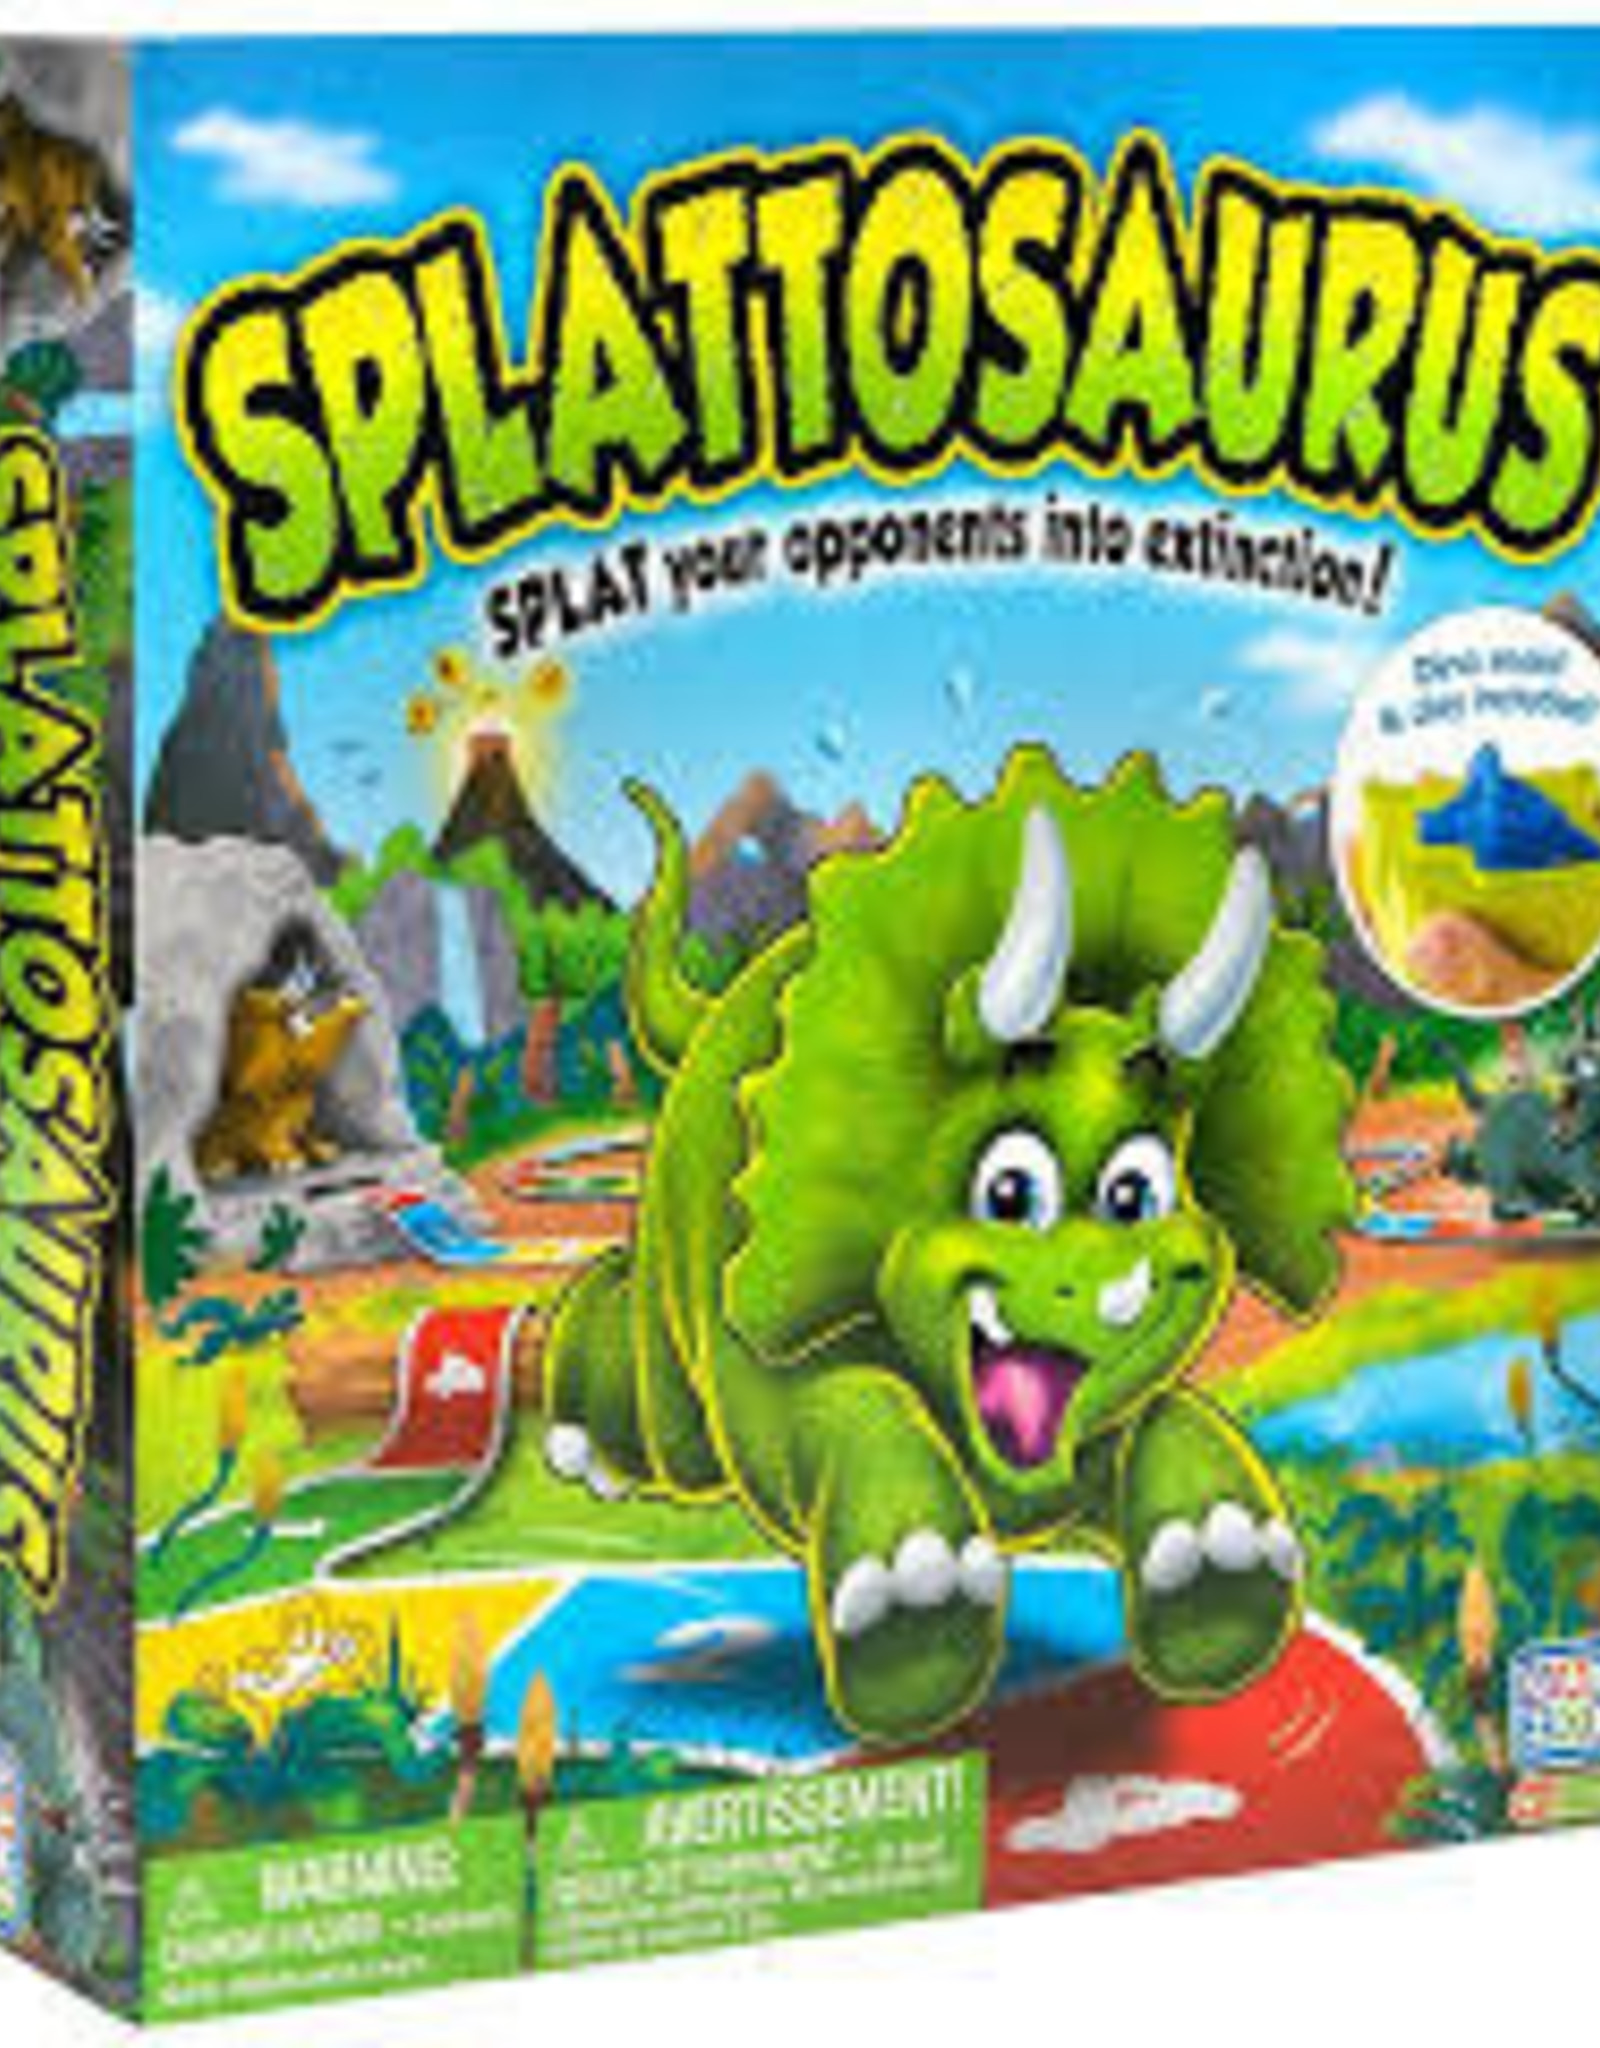 Game Zone Splattosaurus